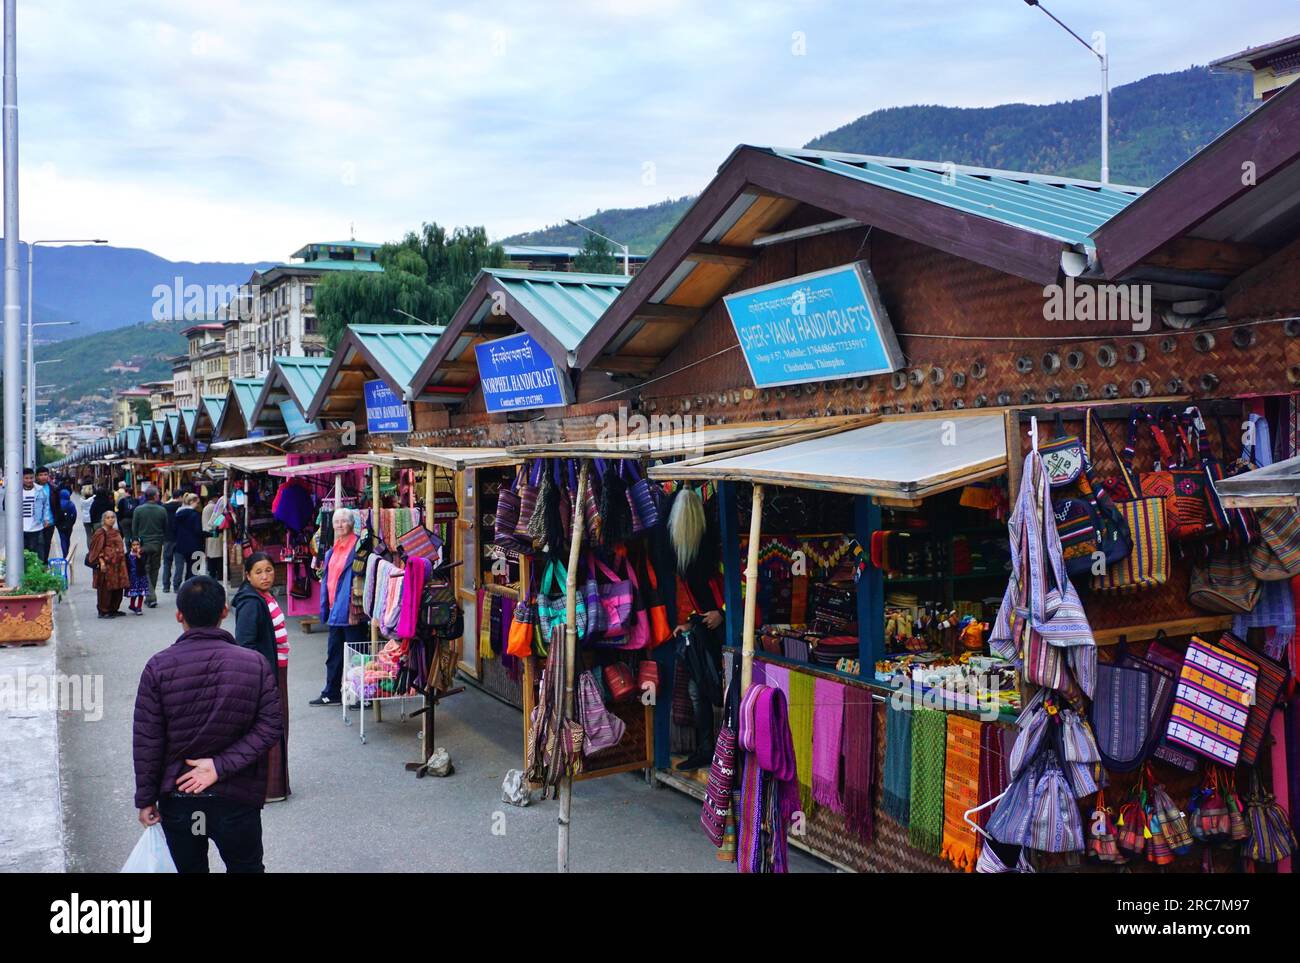 Una fila di chioschi identici allinea una strada trafficata a Thimphu, in Bhutan. I venditori locali vendono abbigliamento, gioielli, oggetti di artigianato, souvenir e altri oggetti Foto Stock